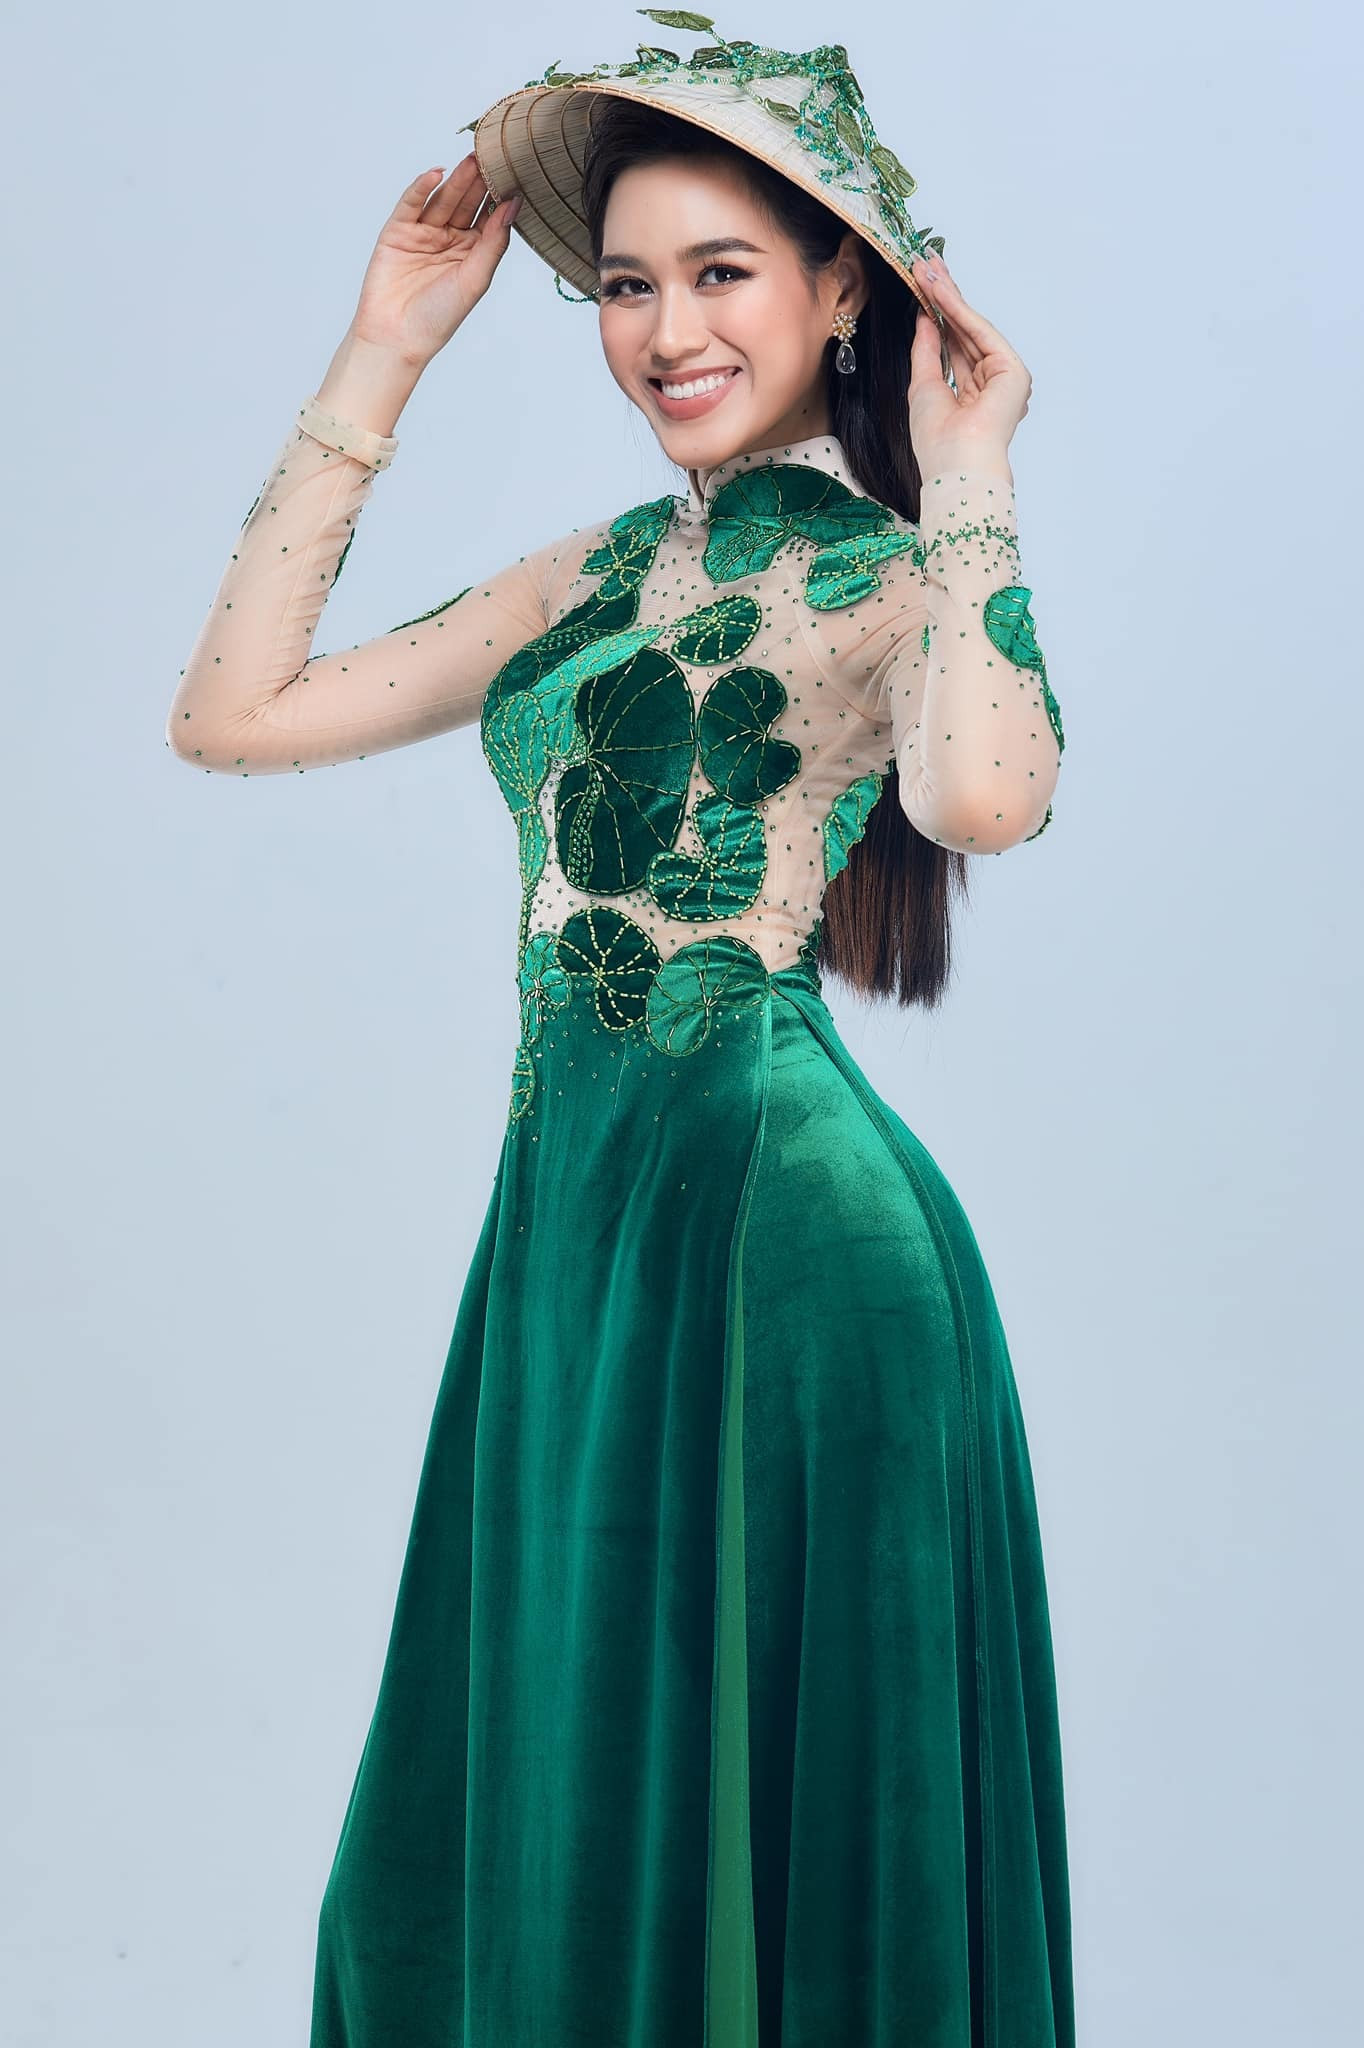 Ngày 10/12, Đỗ Hà tham gia phỏng vấn kín với trang phục áo dài, họa tiết rau má để thể hiện niềm tự hào về quê hương Thanh Hóa nói riêng, đất nước Việt Nam nói chung.